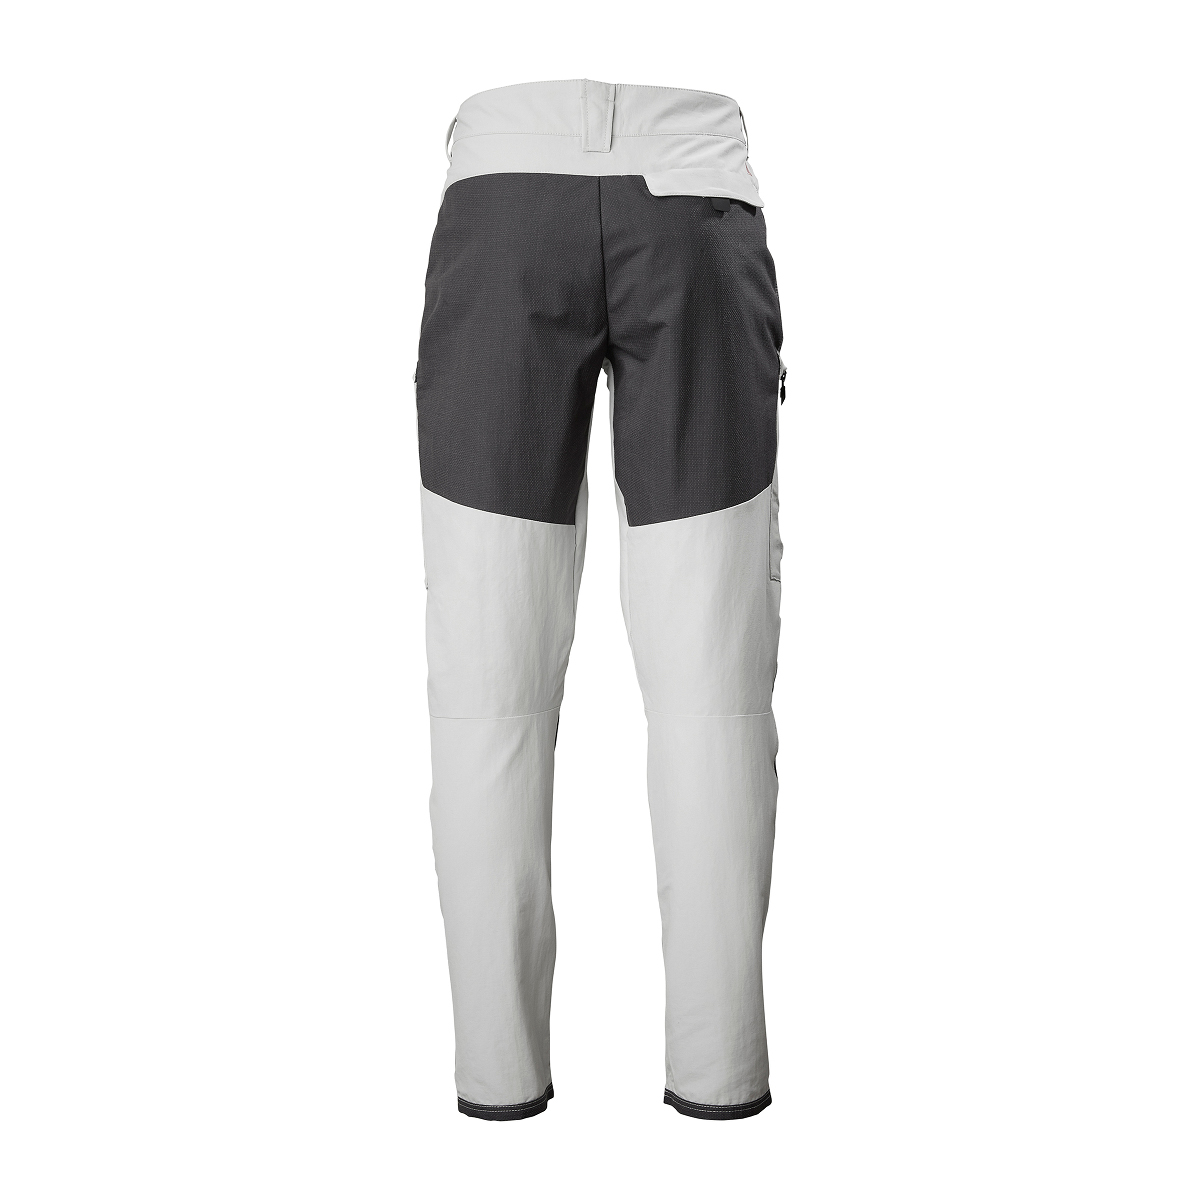 Musto Evolution Performance pantalon de voile 2.0 homme gris clair, taille 36 Long